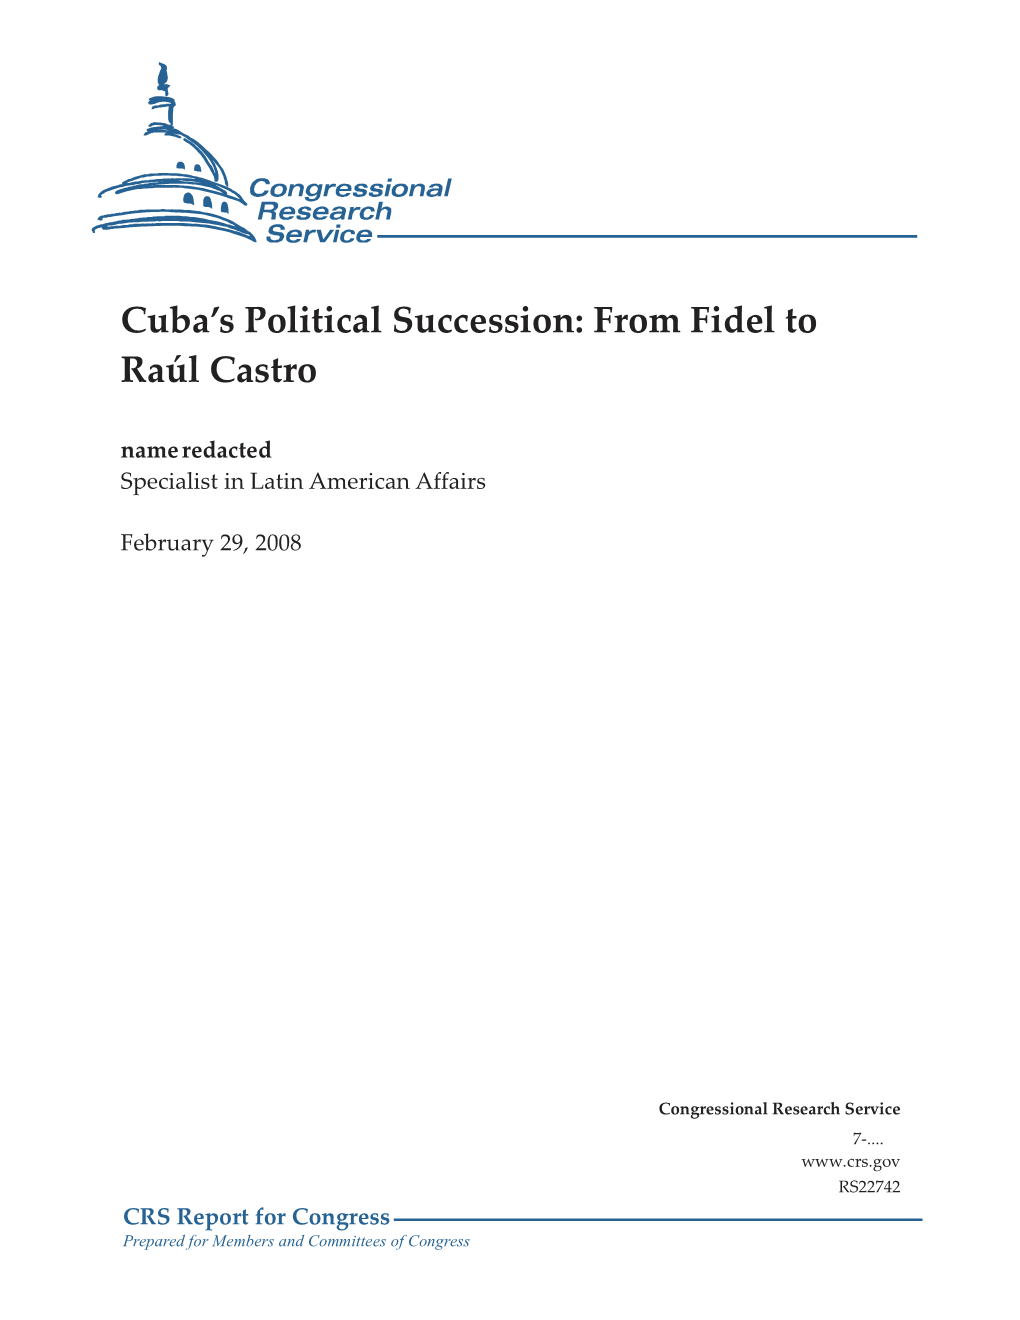 Cuba's Political Succession: from Fidel to Raúl Castro